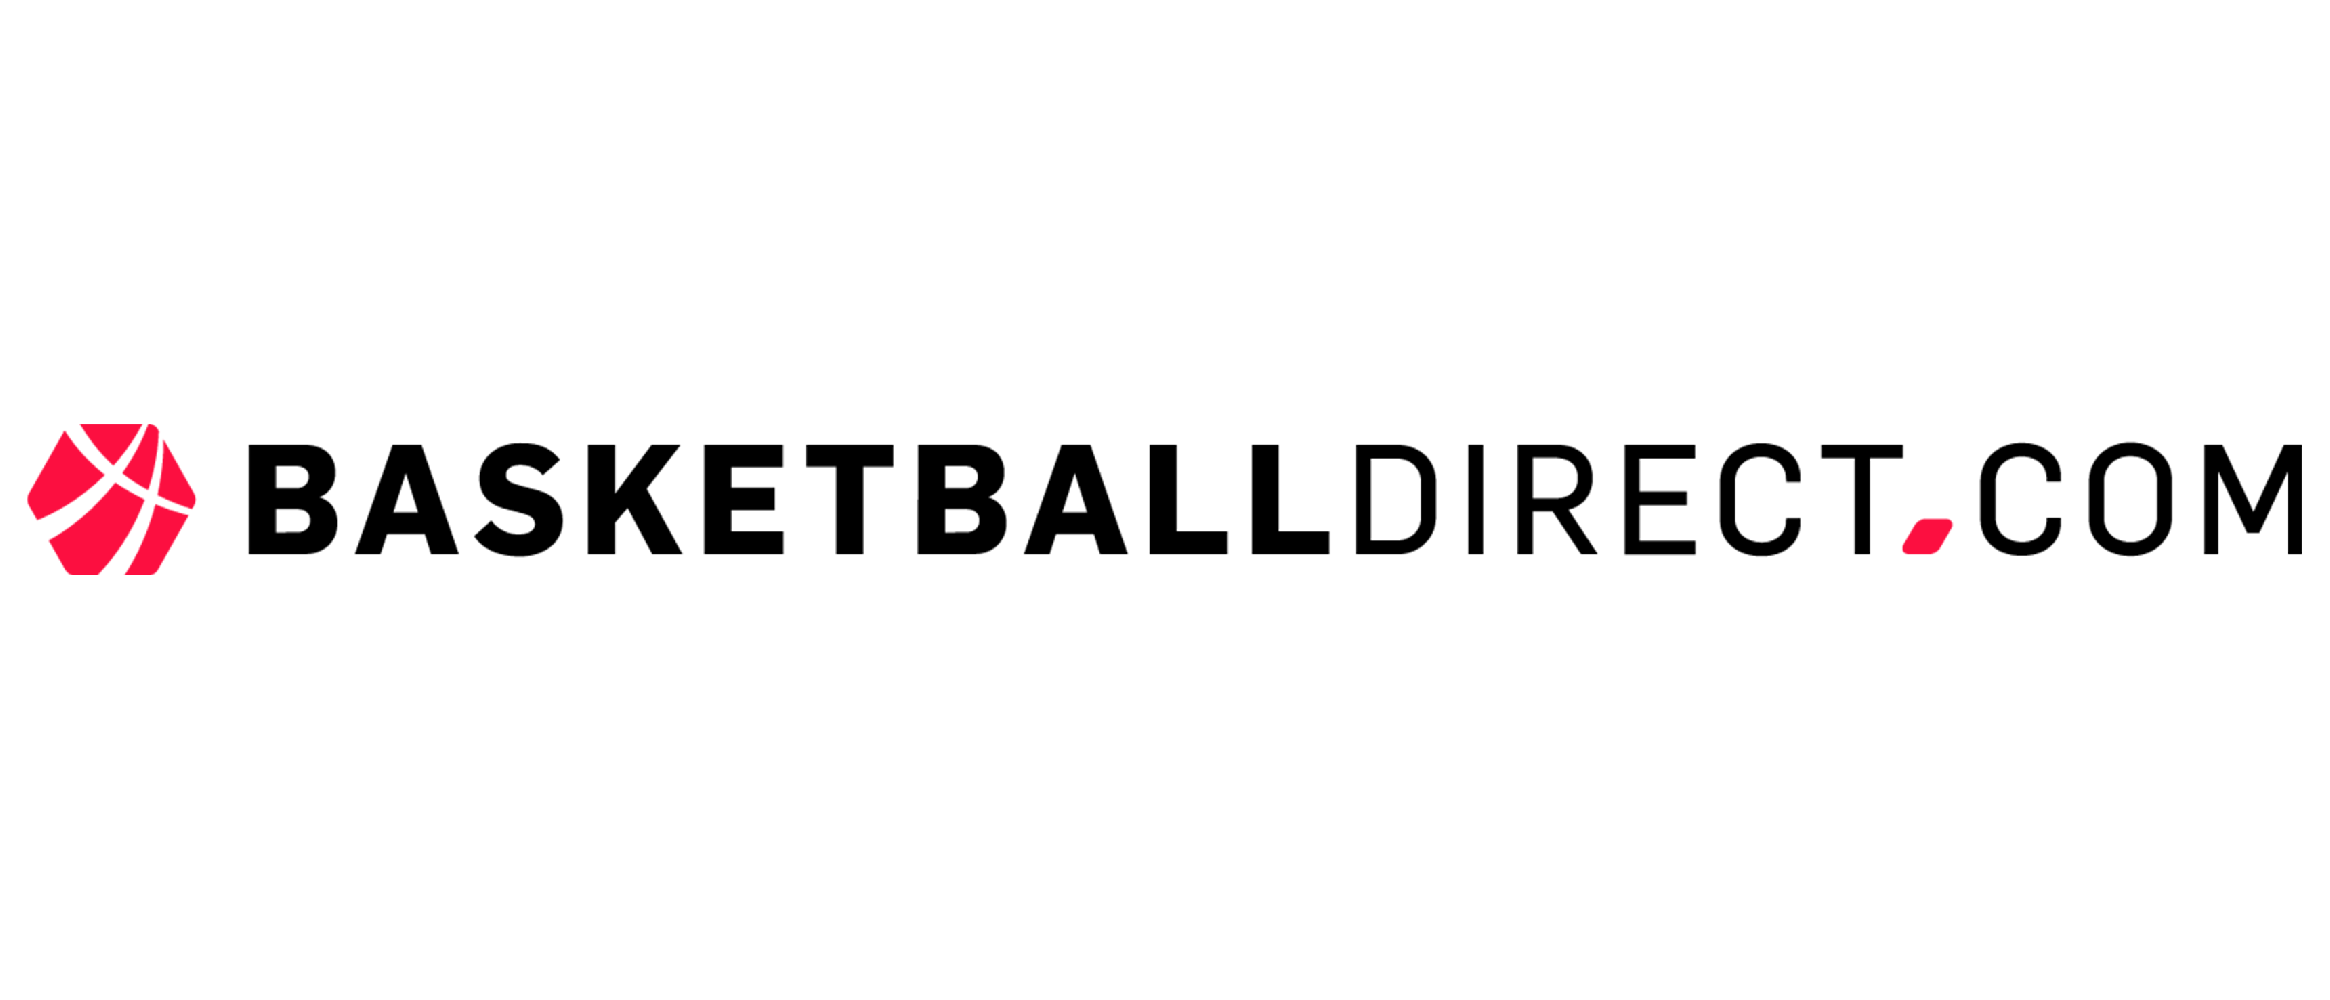 Basketballdirect.com/nl